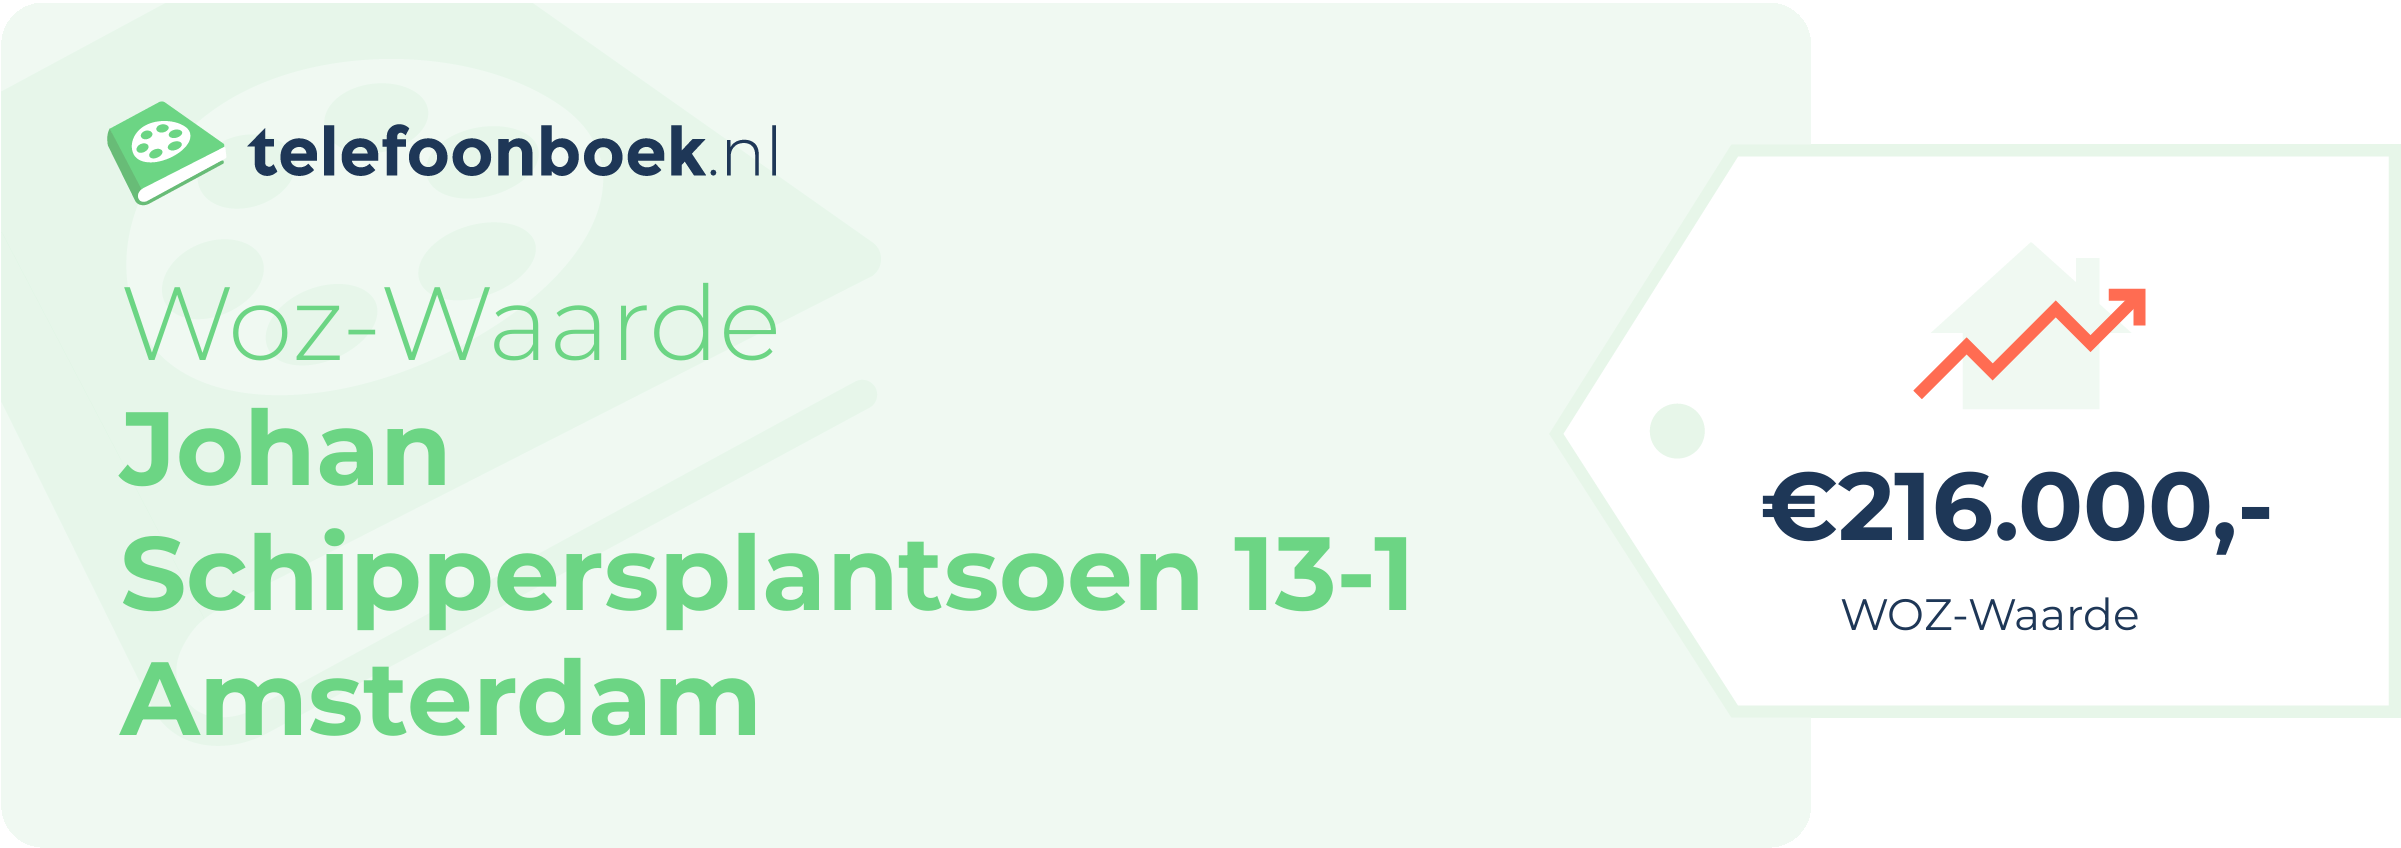 WOZ-waarde Johan Schippersplantsoen 13-1 Amsterdam